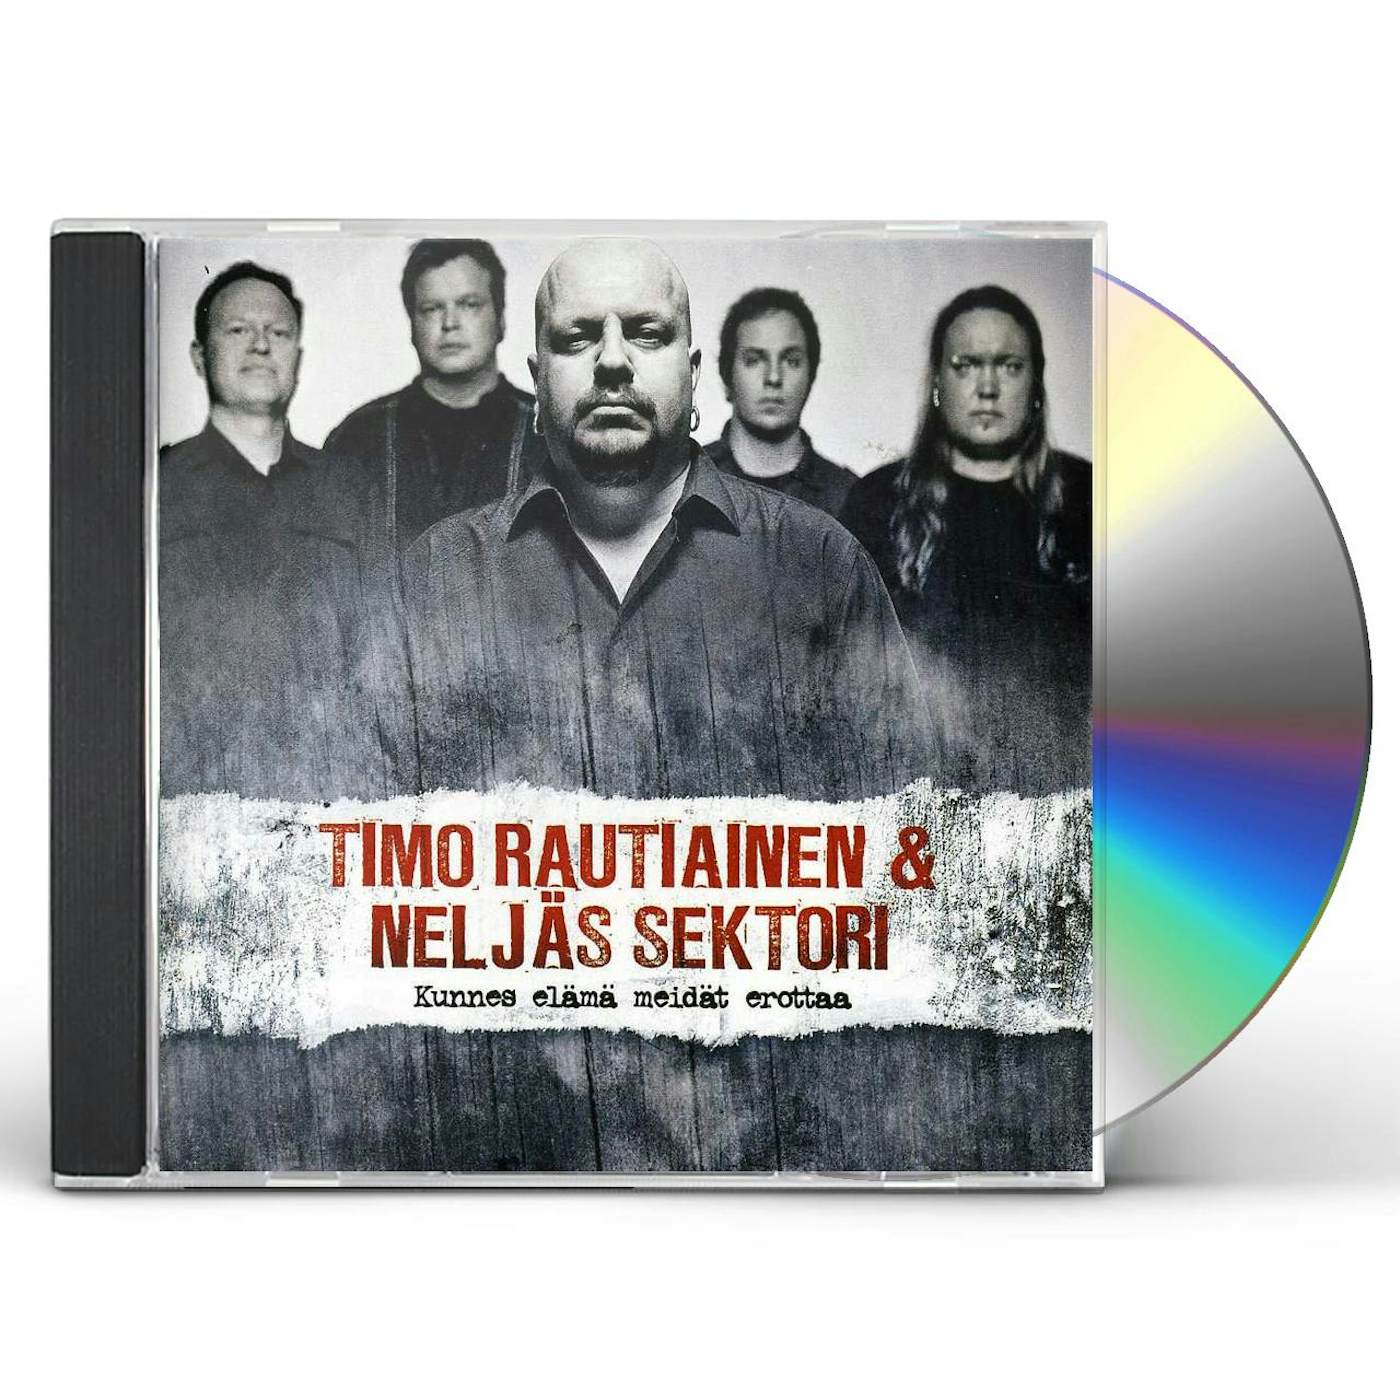 Timo Rautiainen KUNNES ELAMA MEIDAT EROTTAA CD